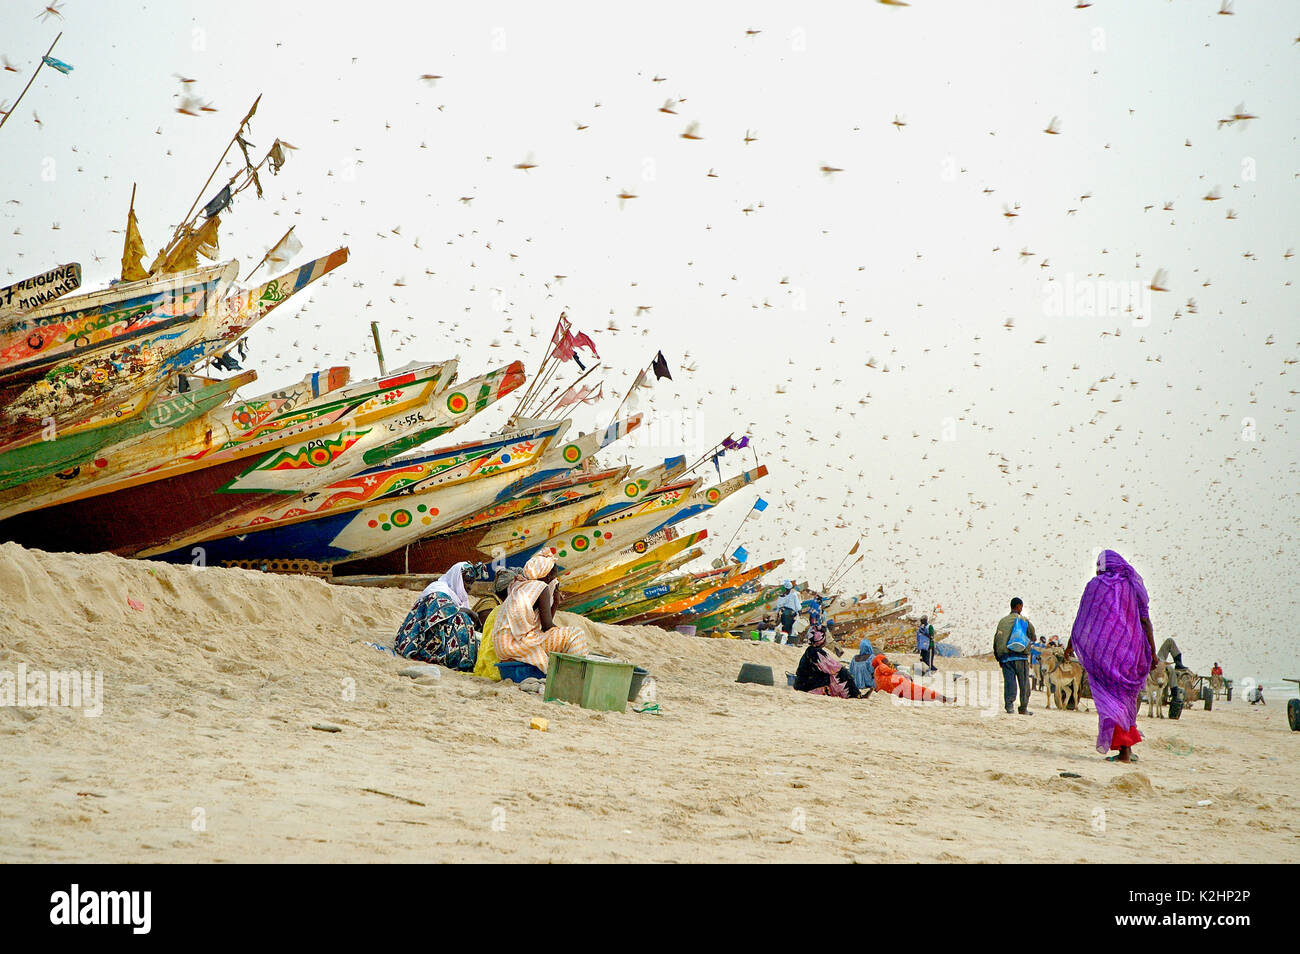 Eine Frau schützt sich von einem Schwarm von Heuschrecken am Strand Plage. Nouakchott, Mauretanien Stockfoto